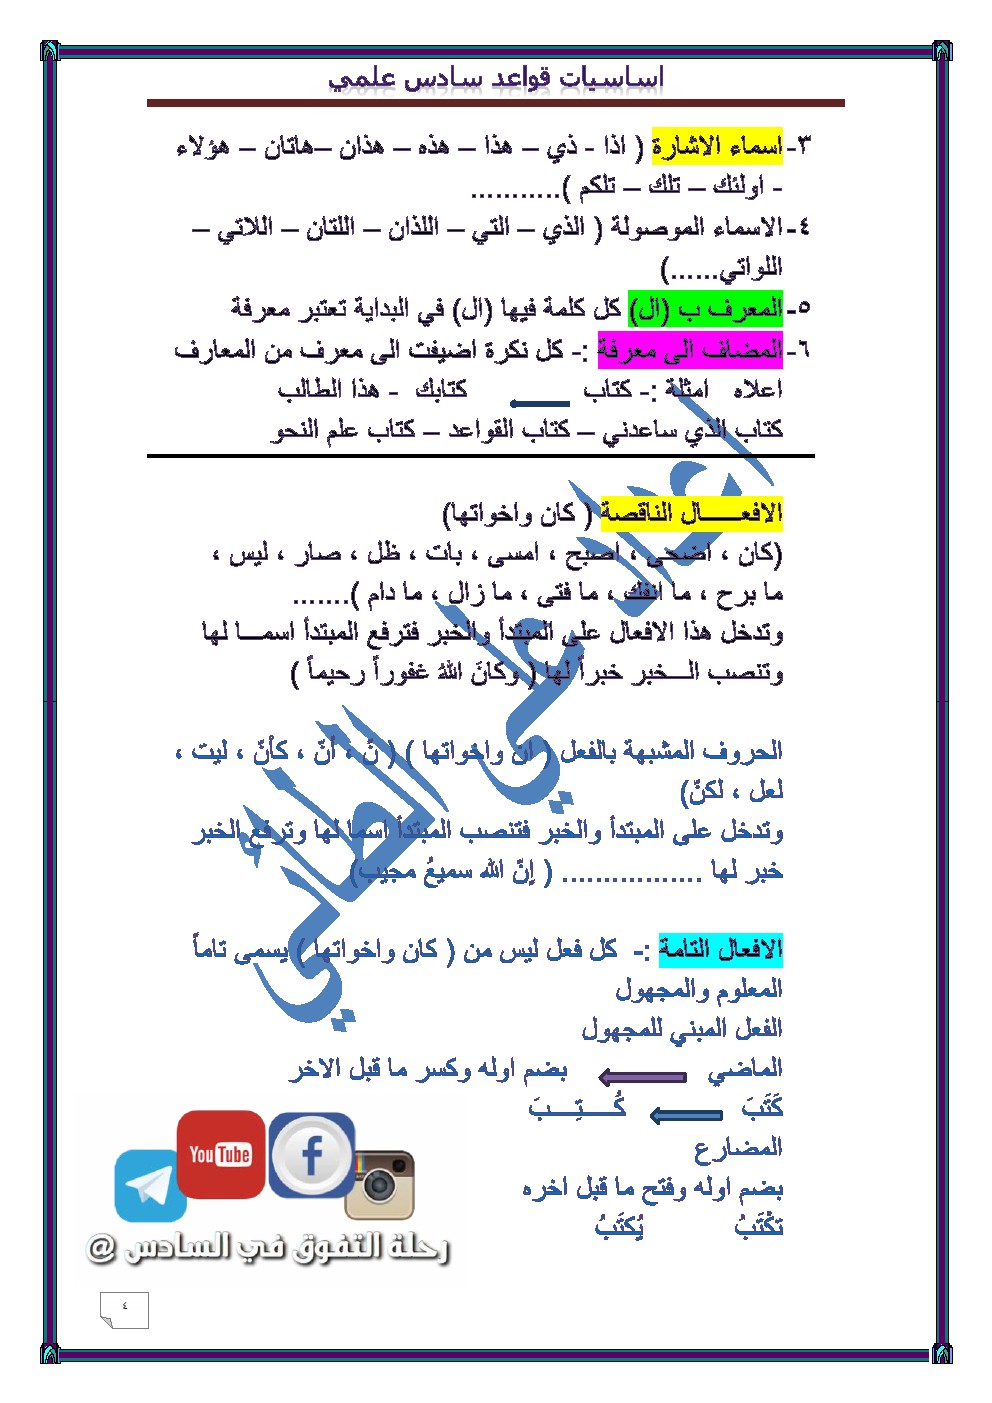 اساسيات قواعد اللغة العربية للصف السادس الاعدادي للاستاذ علي الطائي